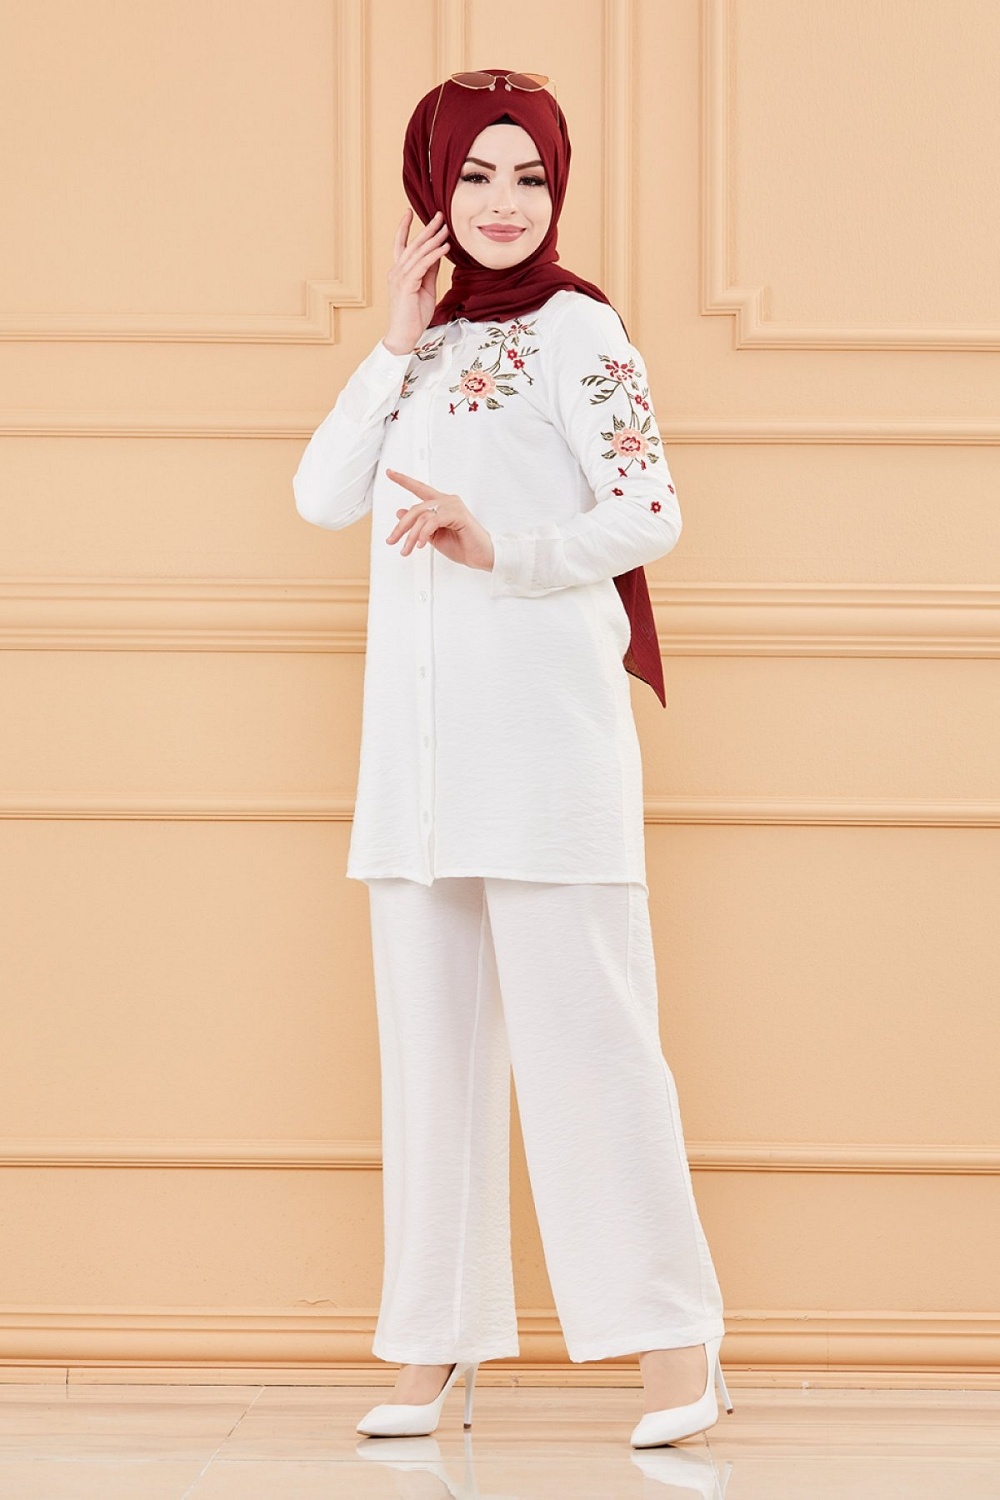 Ensemble femme : Veste et pantalon (Tenue hijab classique) - Couleur blanc